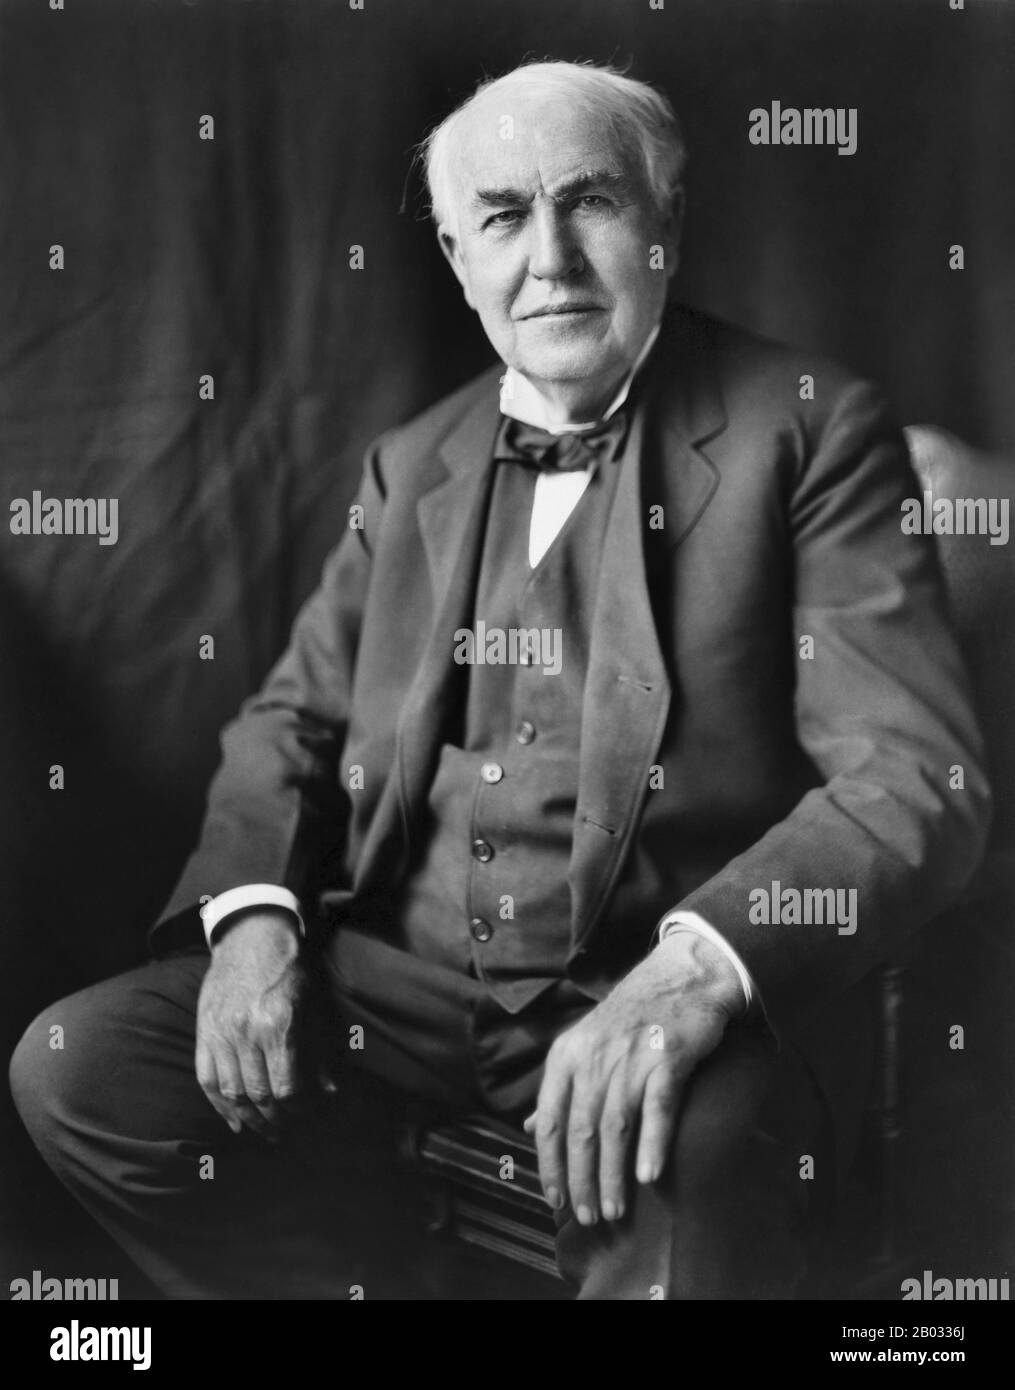 Thomas Alva Edison (Londra, 11 febbraio 1847 – Parigi, 18 ottobre 1931) è stato un . Ha sviluppato molti dispositivi che hanno influenzato notevolmente la vita in tutto il mondo, compreso il fonografo, la macchina fotografica di movimento dell'immagine e la lampadina elettrica di lunga durata e pratica di luce. Edison era un inventore prolifico, che deteneva 1.093 brevetti statunitensi a suo nome, così come molti brevetti nel Regno Unito, in Francia e in Germania. Più significativo del numero di brevetti di Edison è stato l'impatto diffuso delle sue invenzioni: Energia elettrica e luce utilità, registrazione del suono, e immagini di movimento tutti i 'netto' Foto Stock